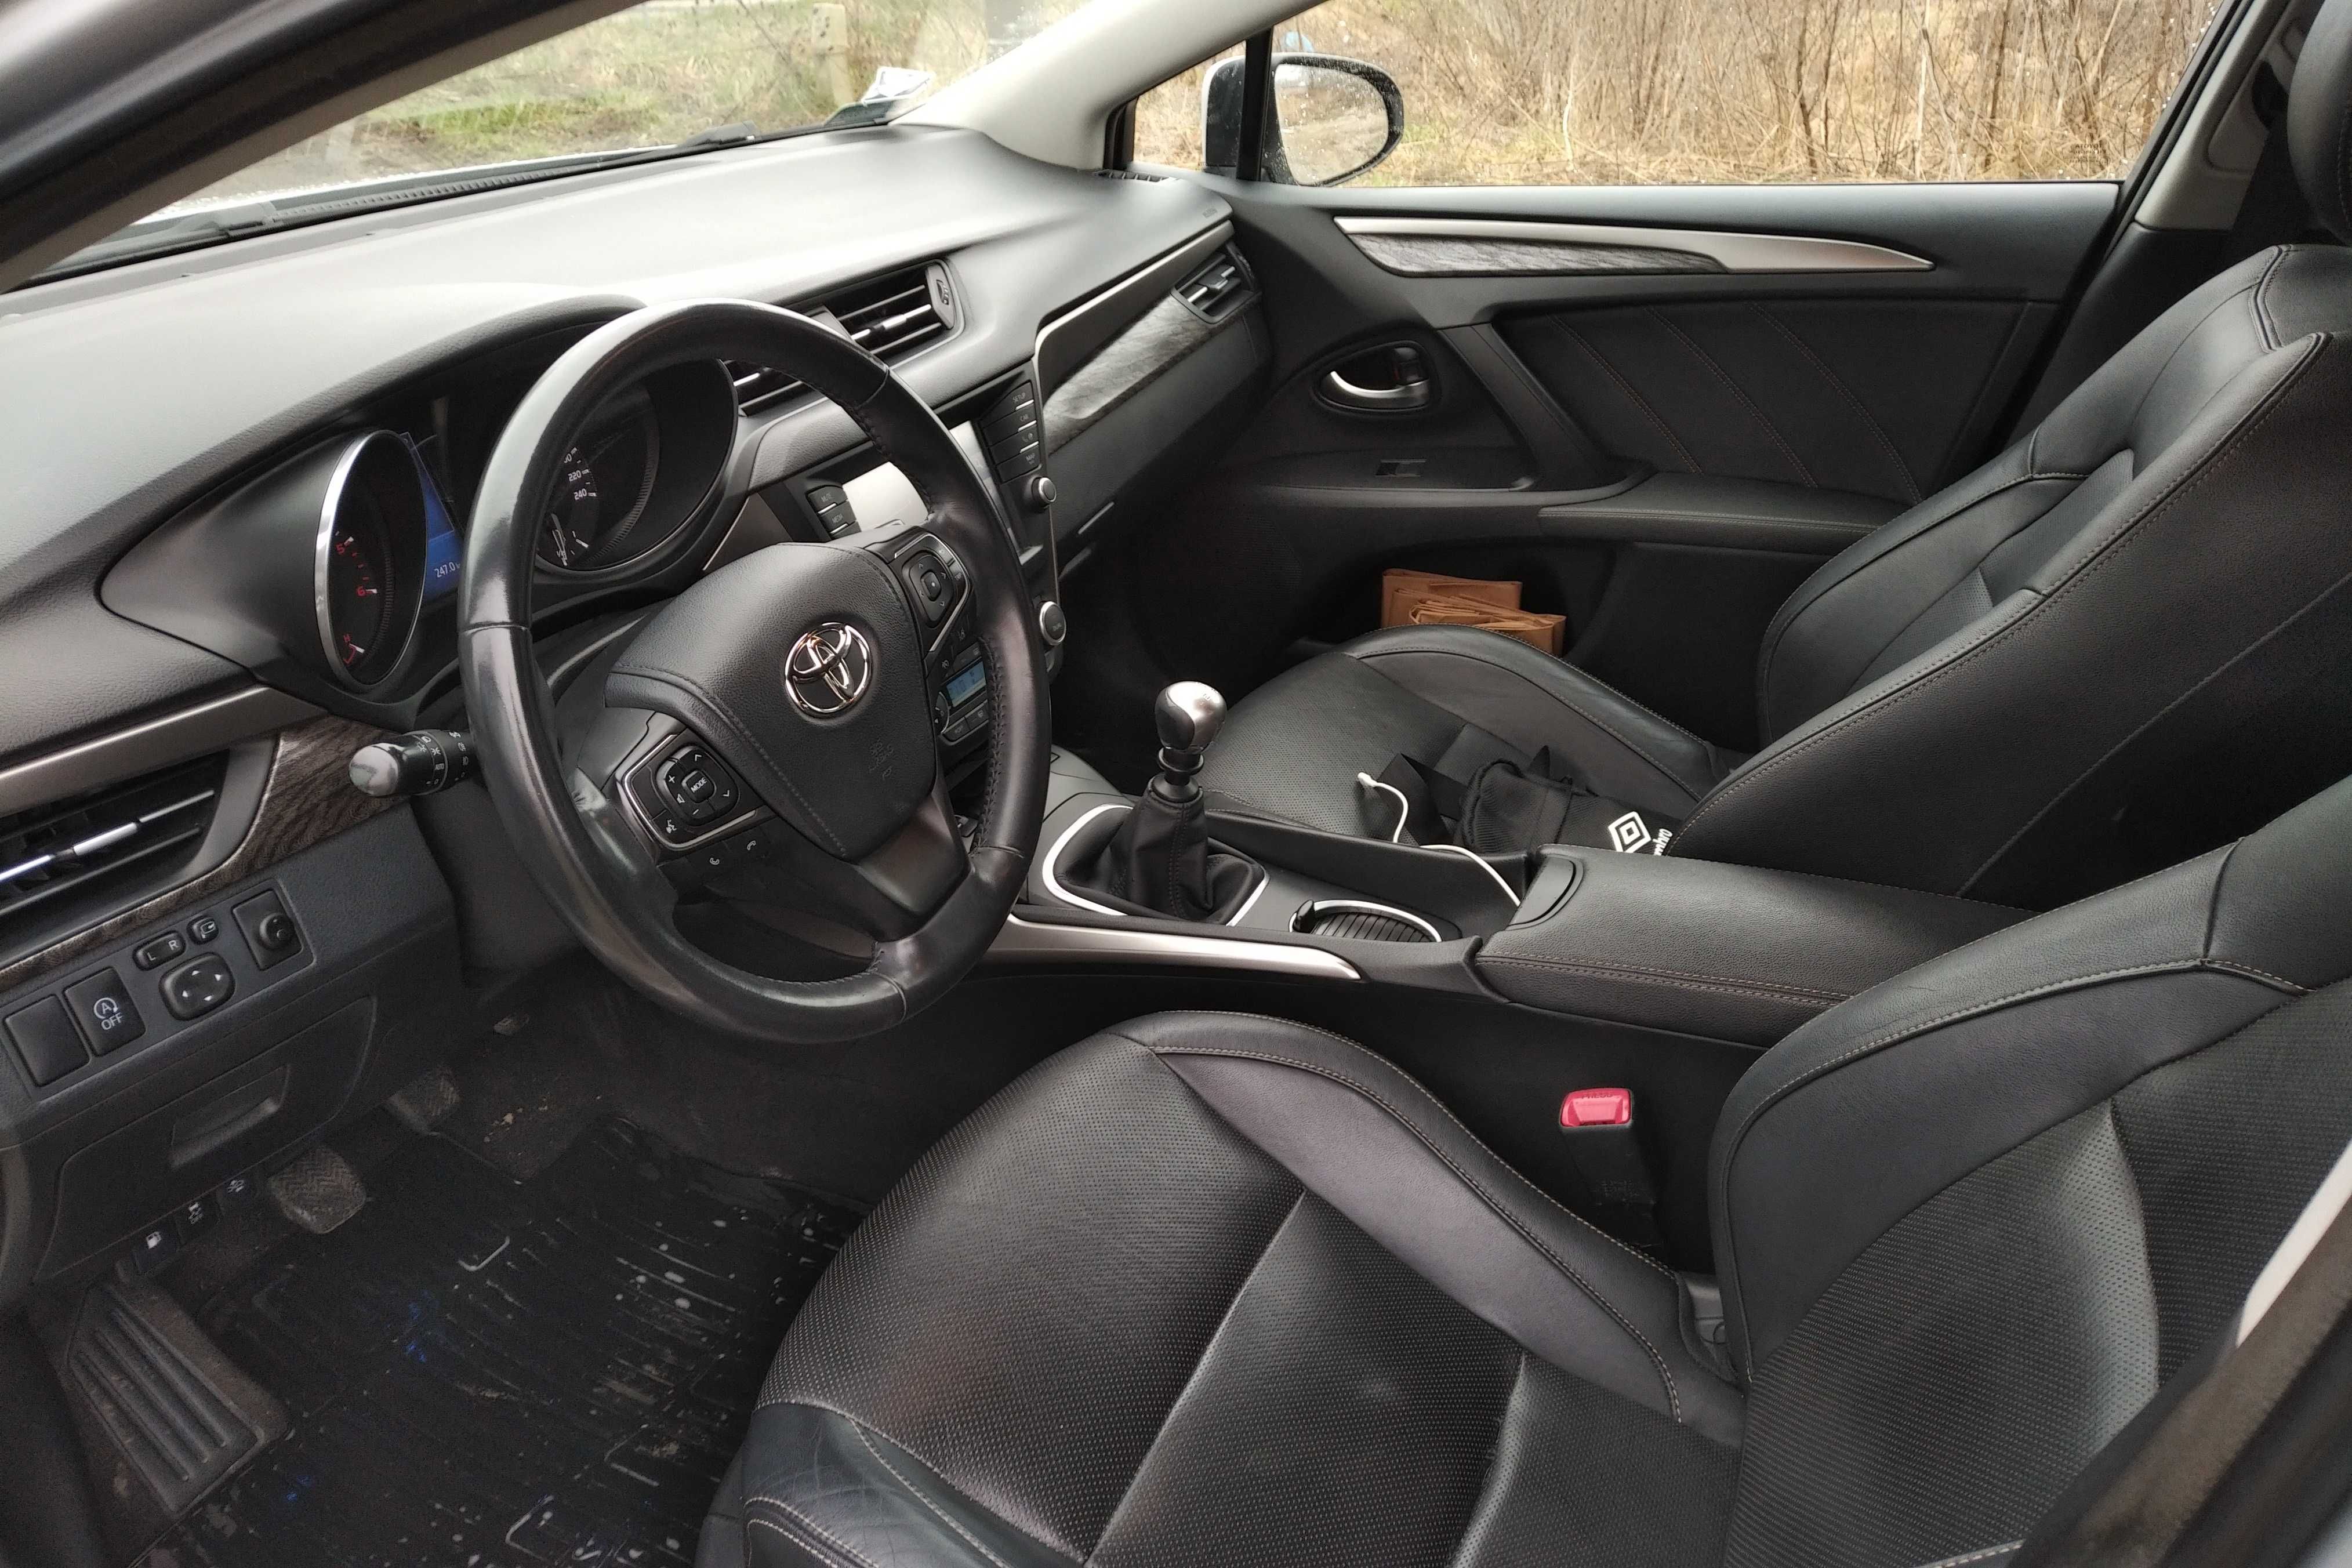 Toyota Avensis POLSKI SALON. Navi, Xenon, Kamera. Bezwypadkowa. VAT23%